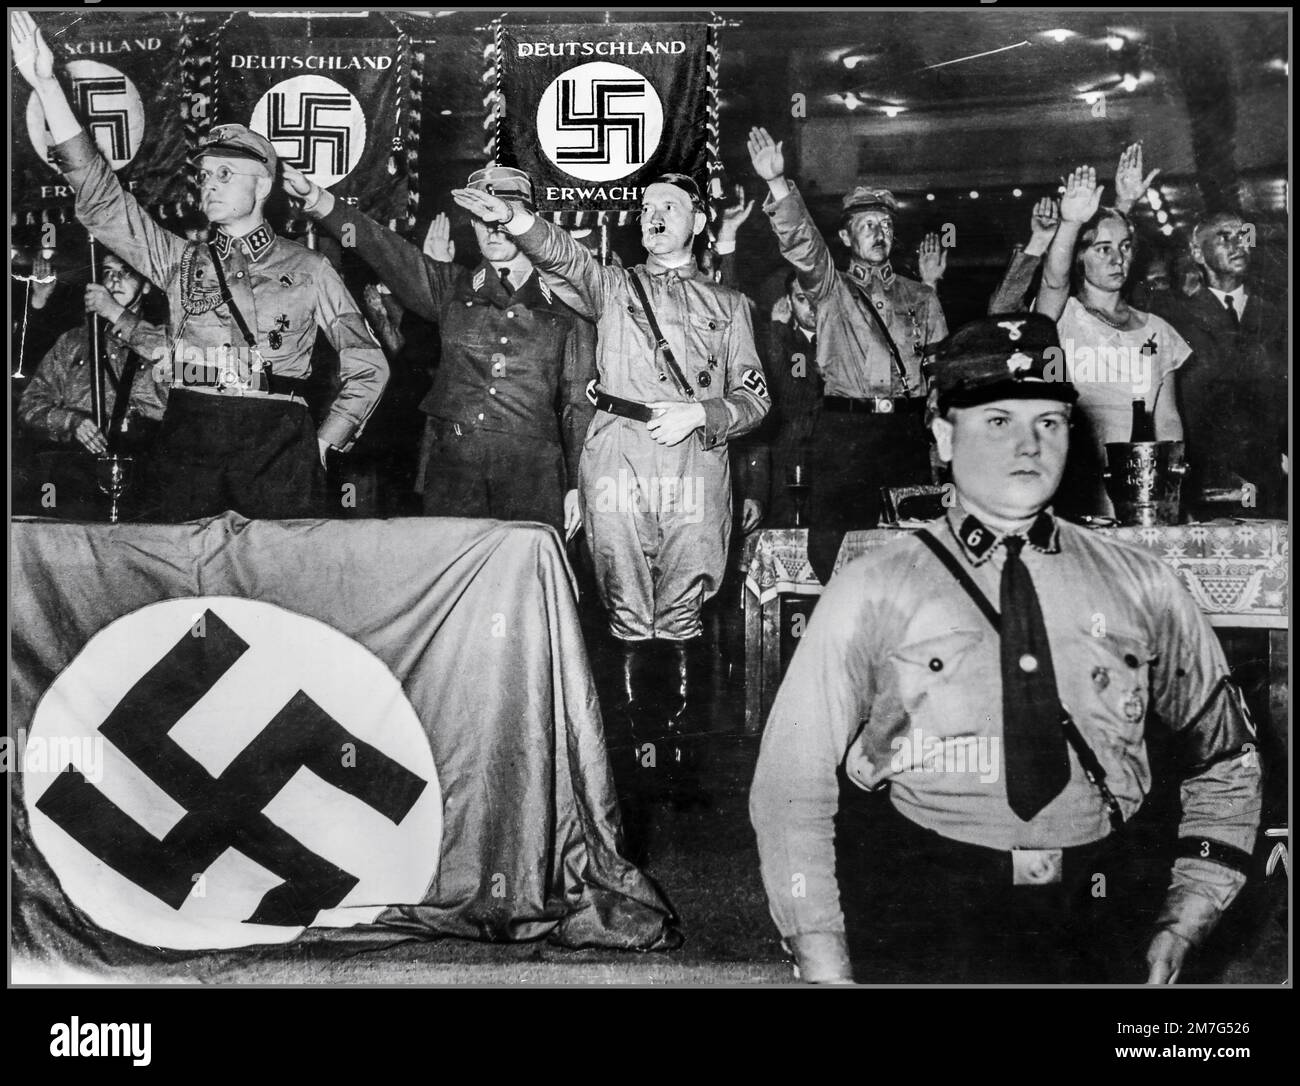 Adolf Hitler in uniforme SA prende il saluto di Heil Hitler dai suoi compagni nazisti in una riunione dei "caschi d'acciaio" al Palazzo dello Sport di Berlino. Sono presenti anche il Principe August Wilhelm, figlio dell'ex Kaiser, Frau Magda Goebbels e il Dottor Wilhelm Frick, settembre 1932: Foto Stock